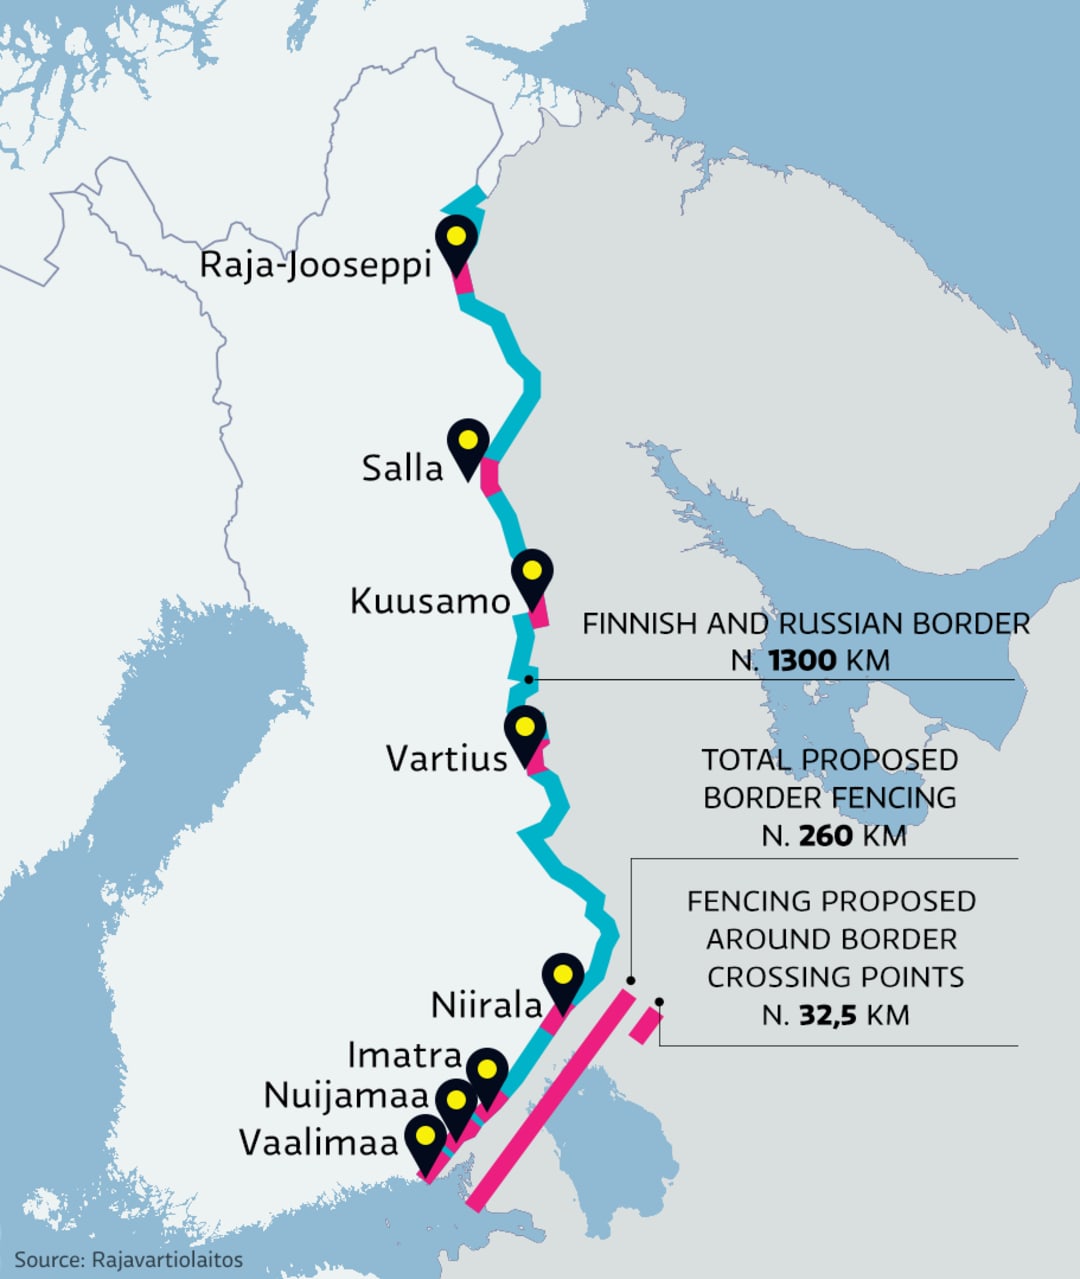 Finnish and Russian border - Финландия започва да строи ограда по границата с Русия